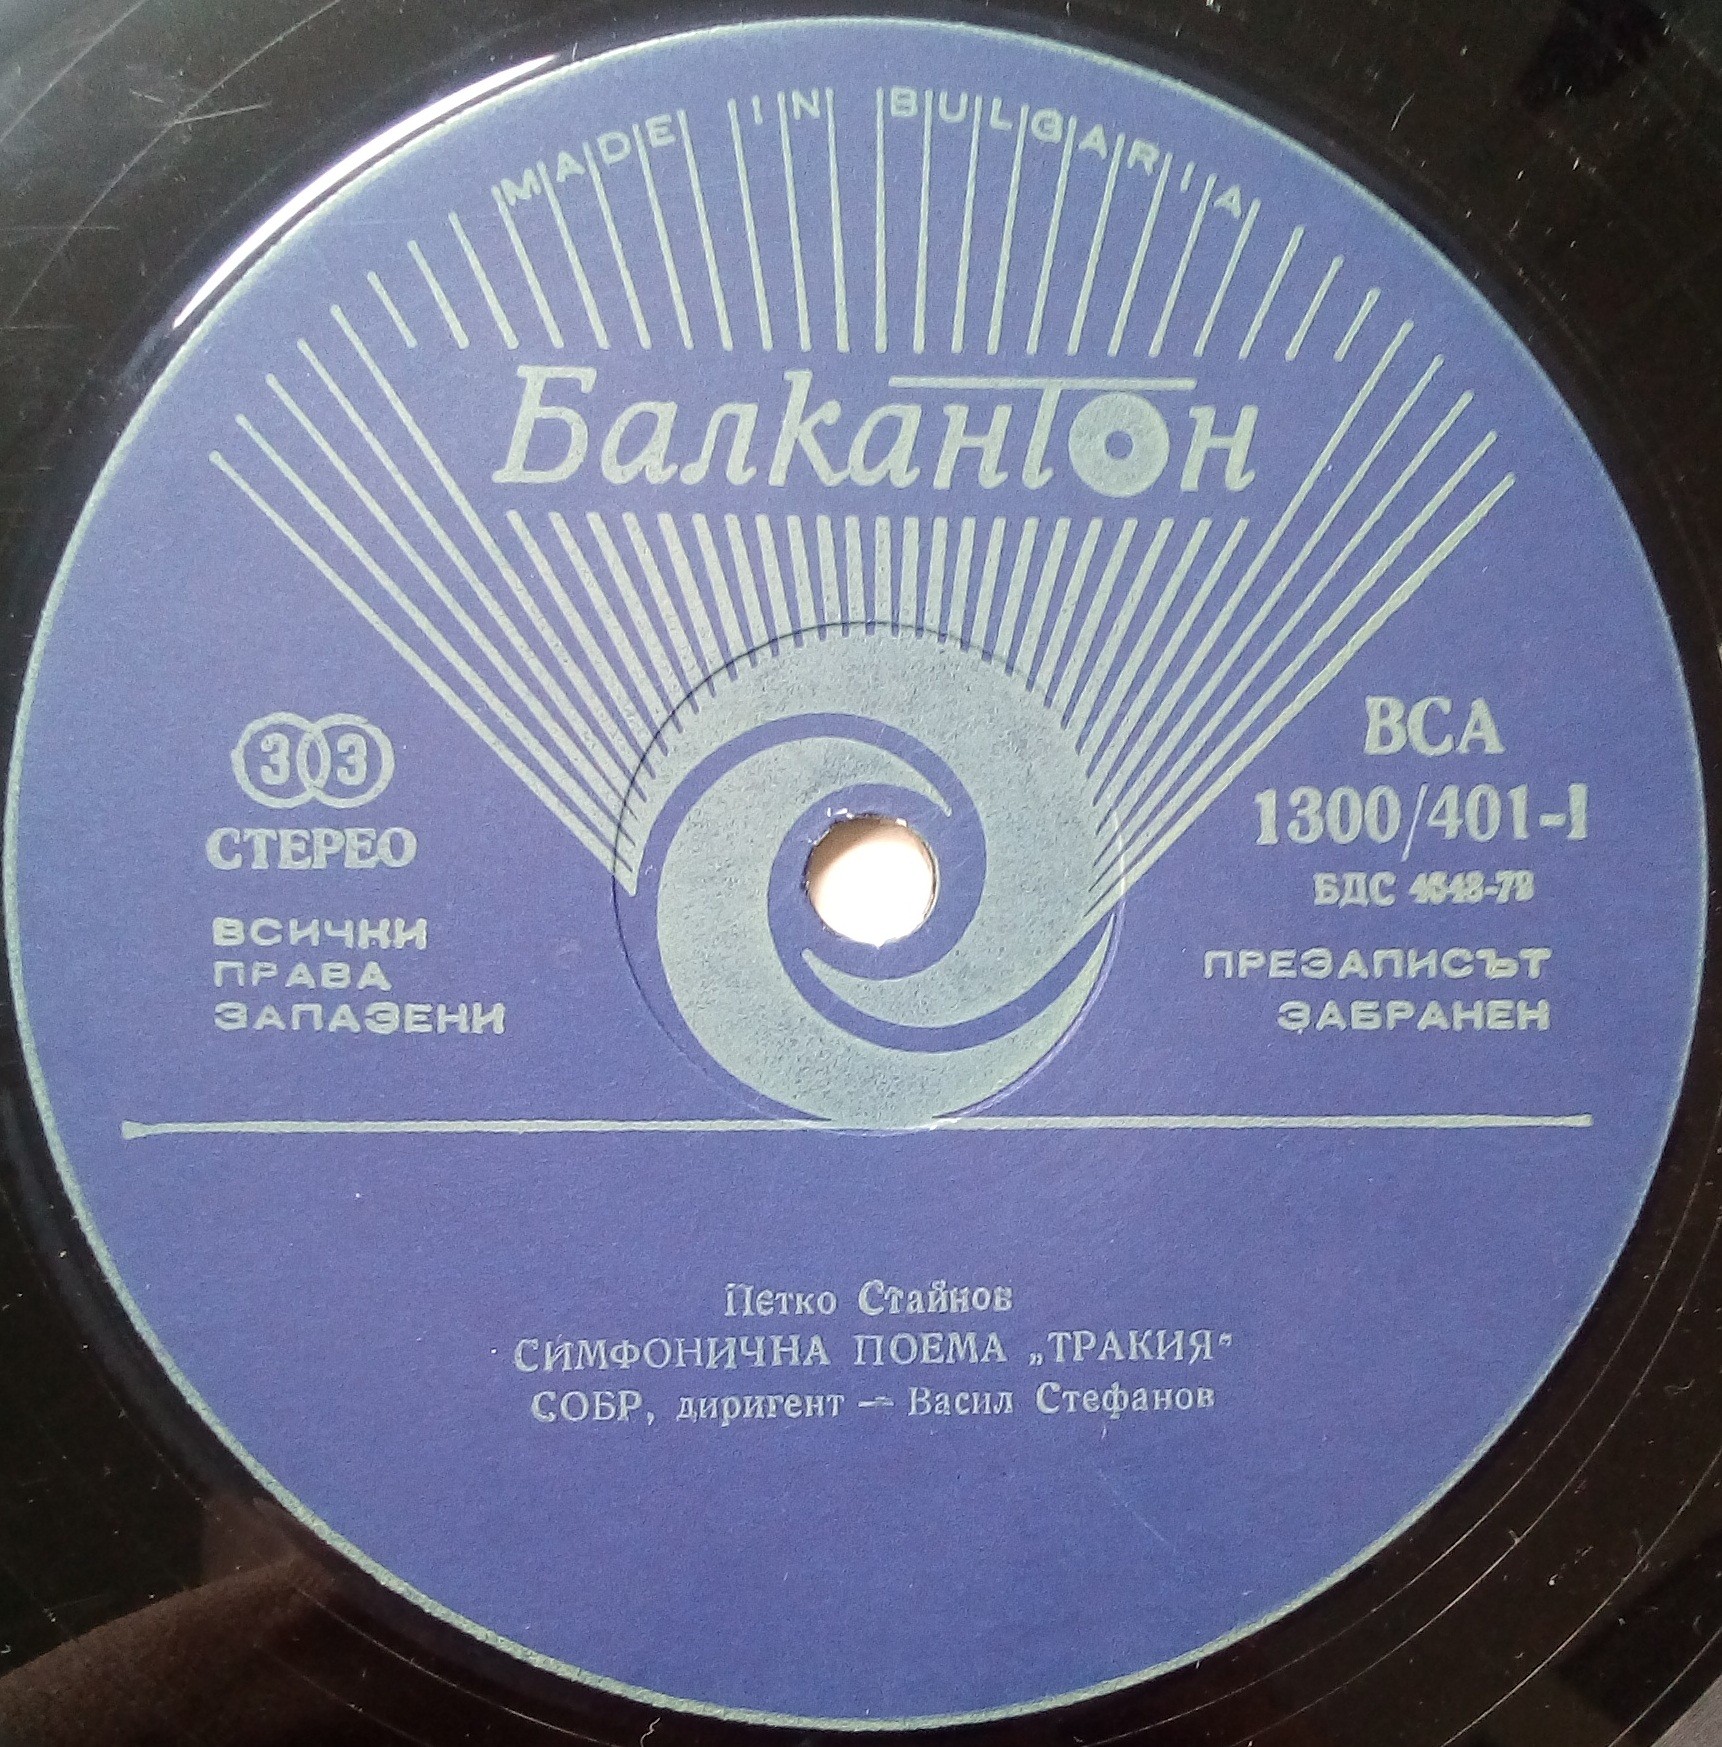 Панорама на българското музикално творчество. Петко СТАЙНОВ